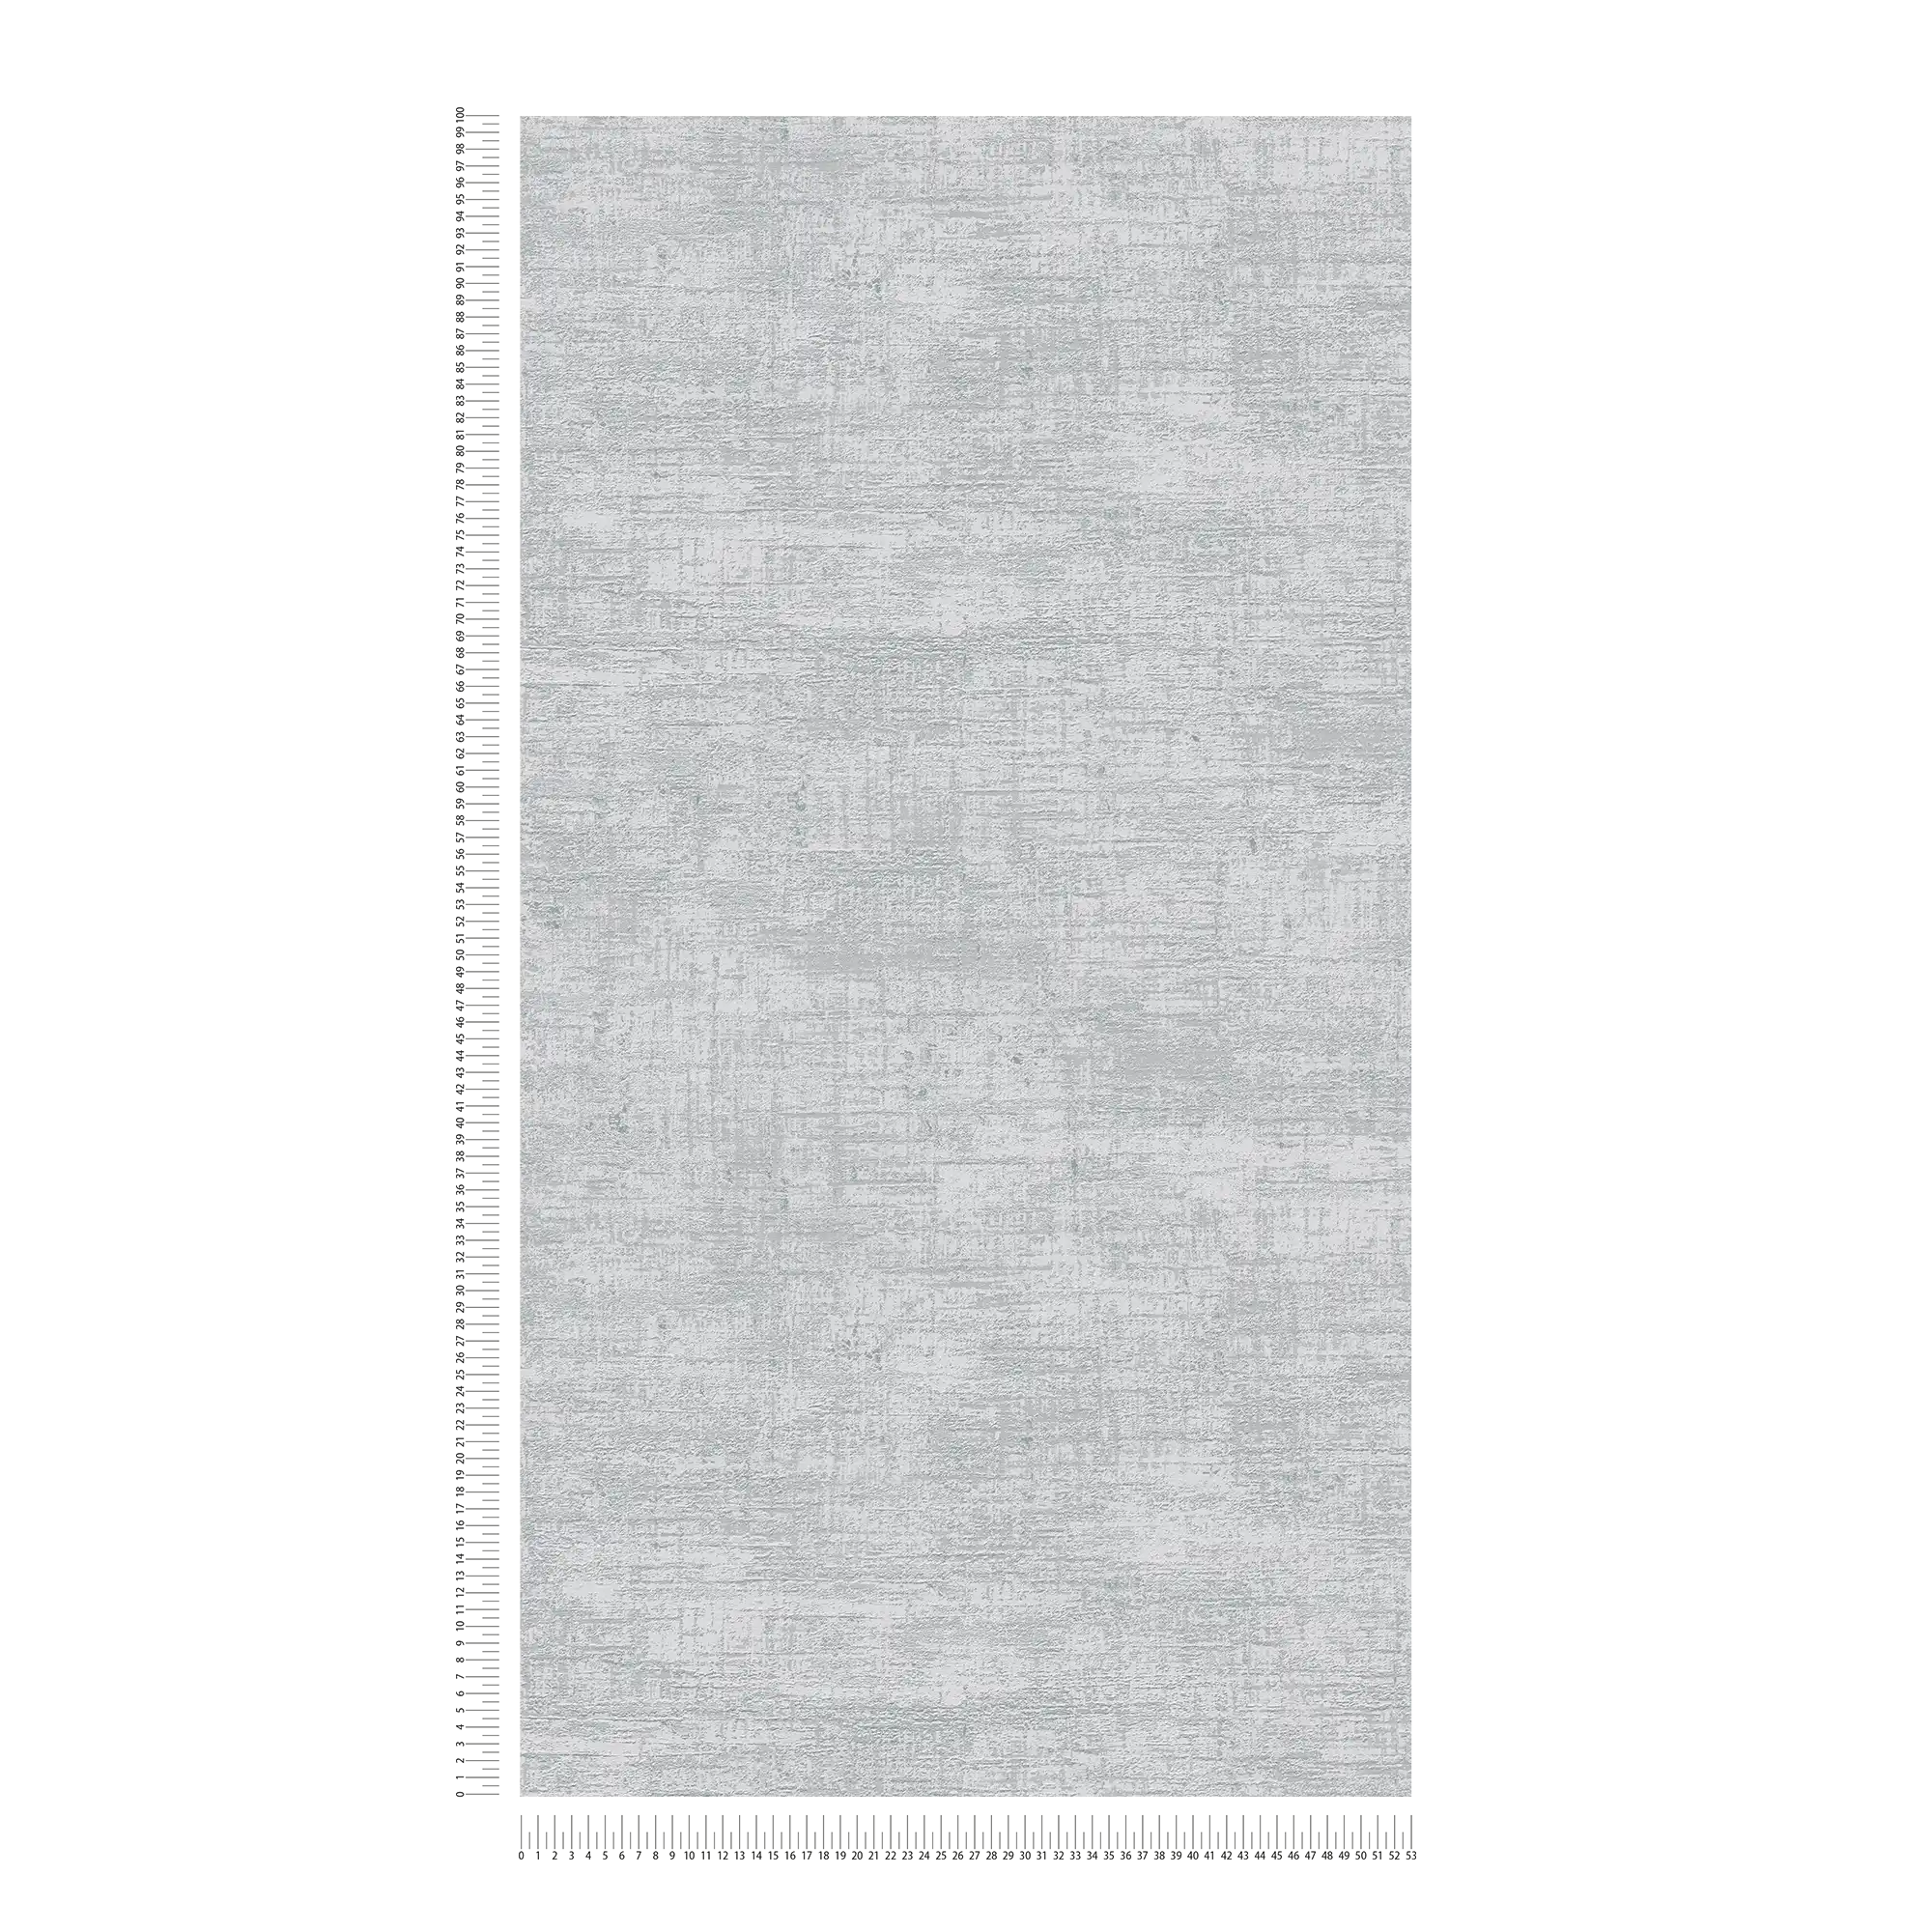             papier peint en papier intissé avec accents métalliques - gris, argenté
        